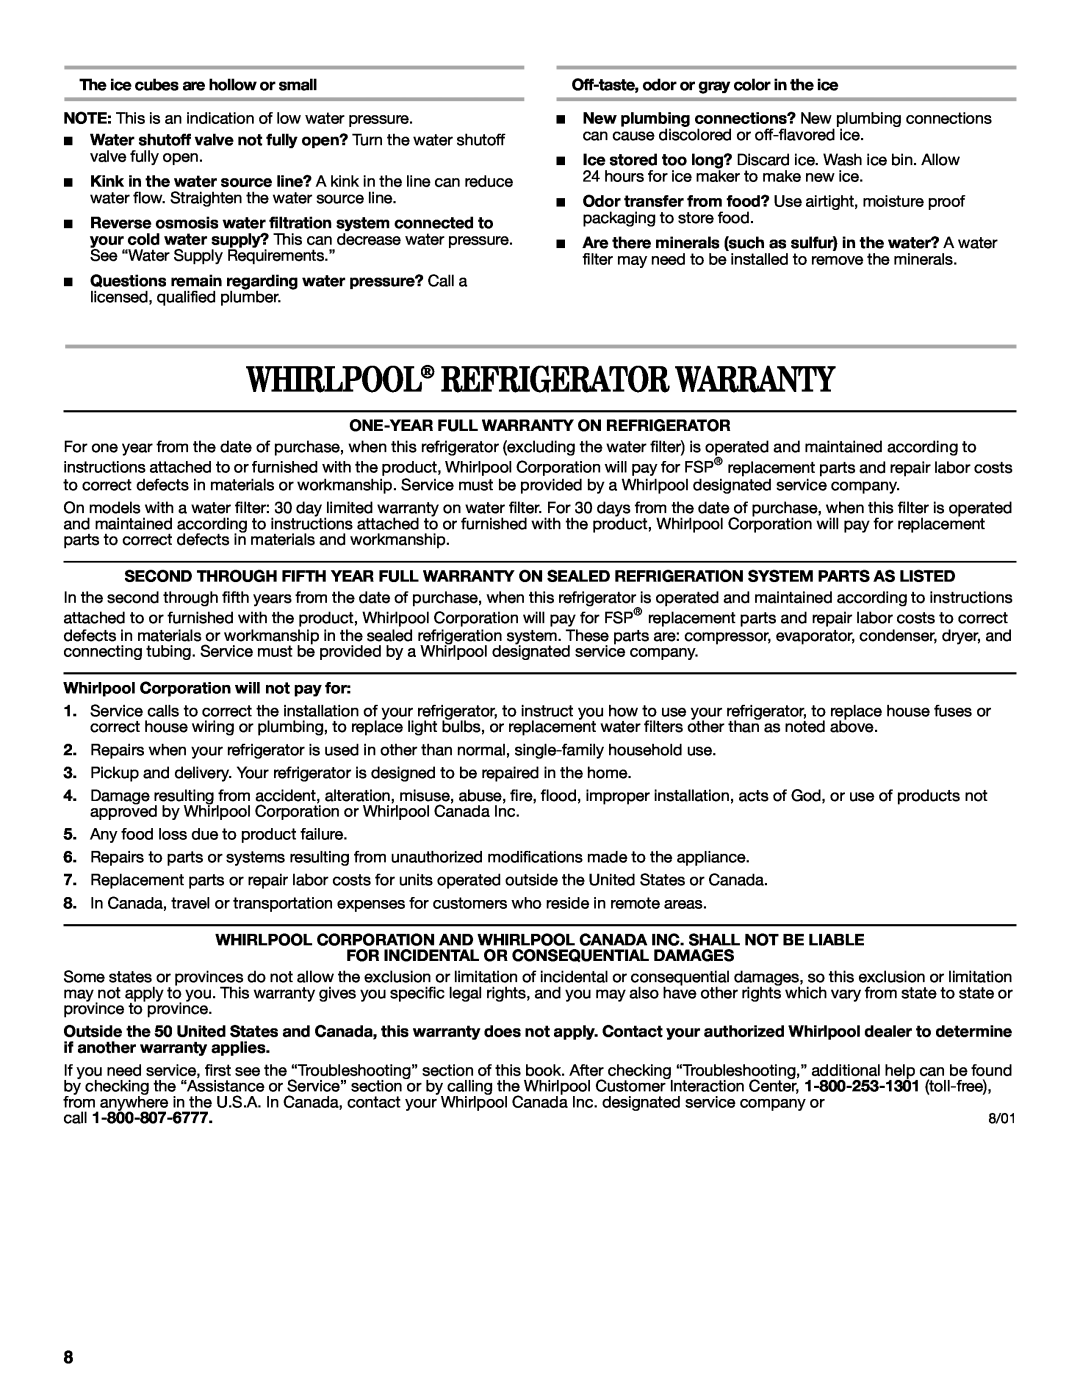 Whirlpool ED2GTKXNQ00 warranty Whirlpool Refrigerator Warranty 